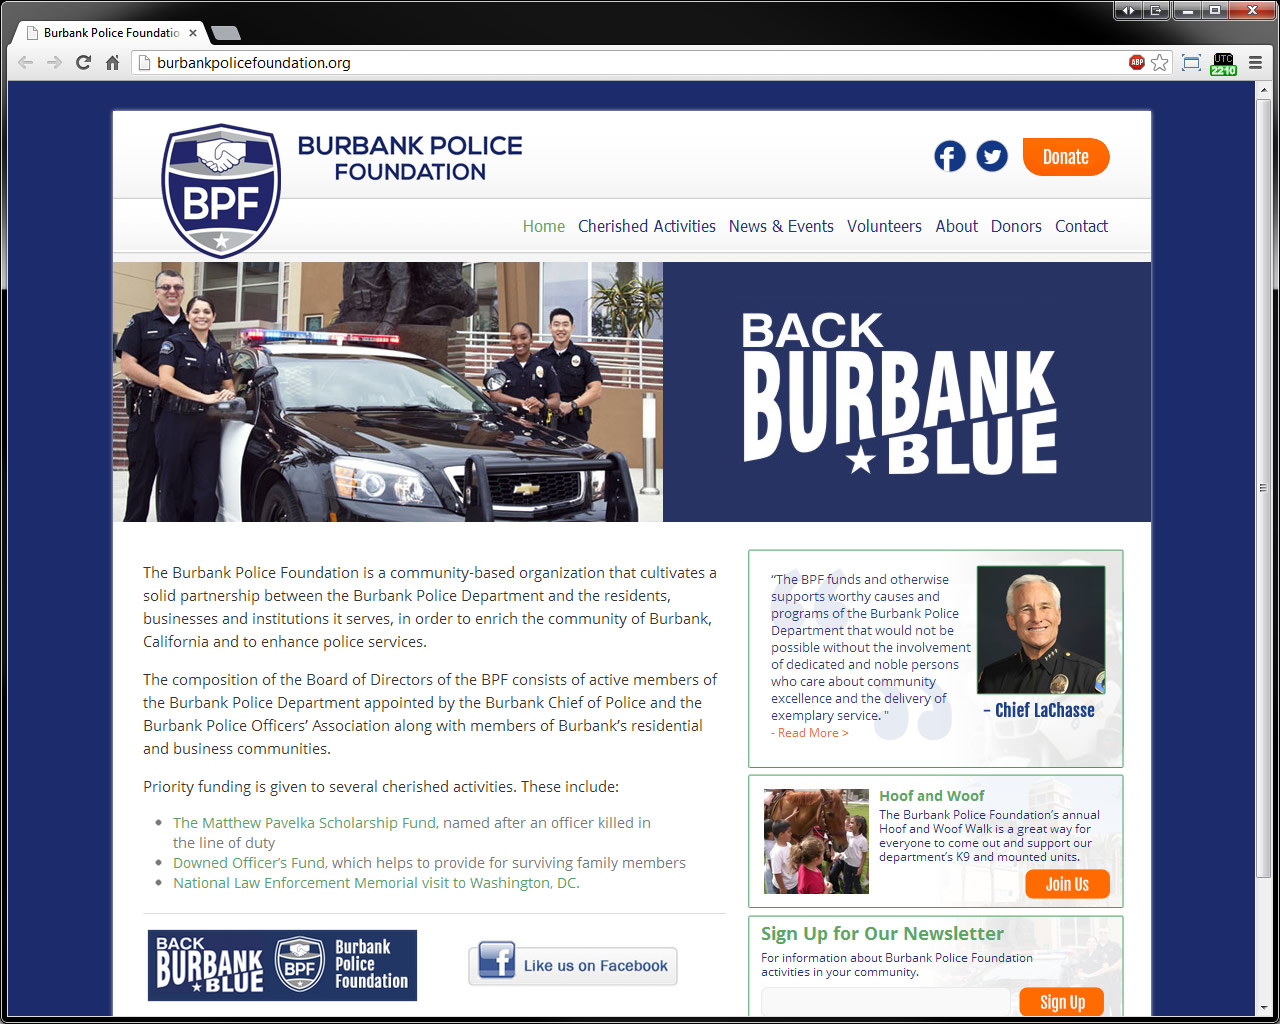 Burbank police job opportunities